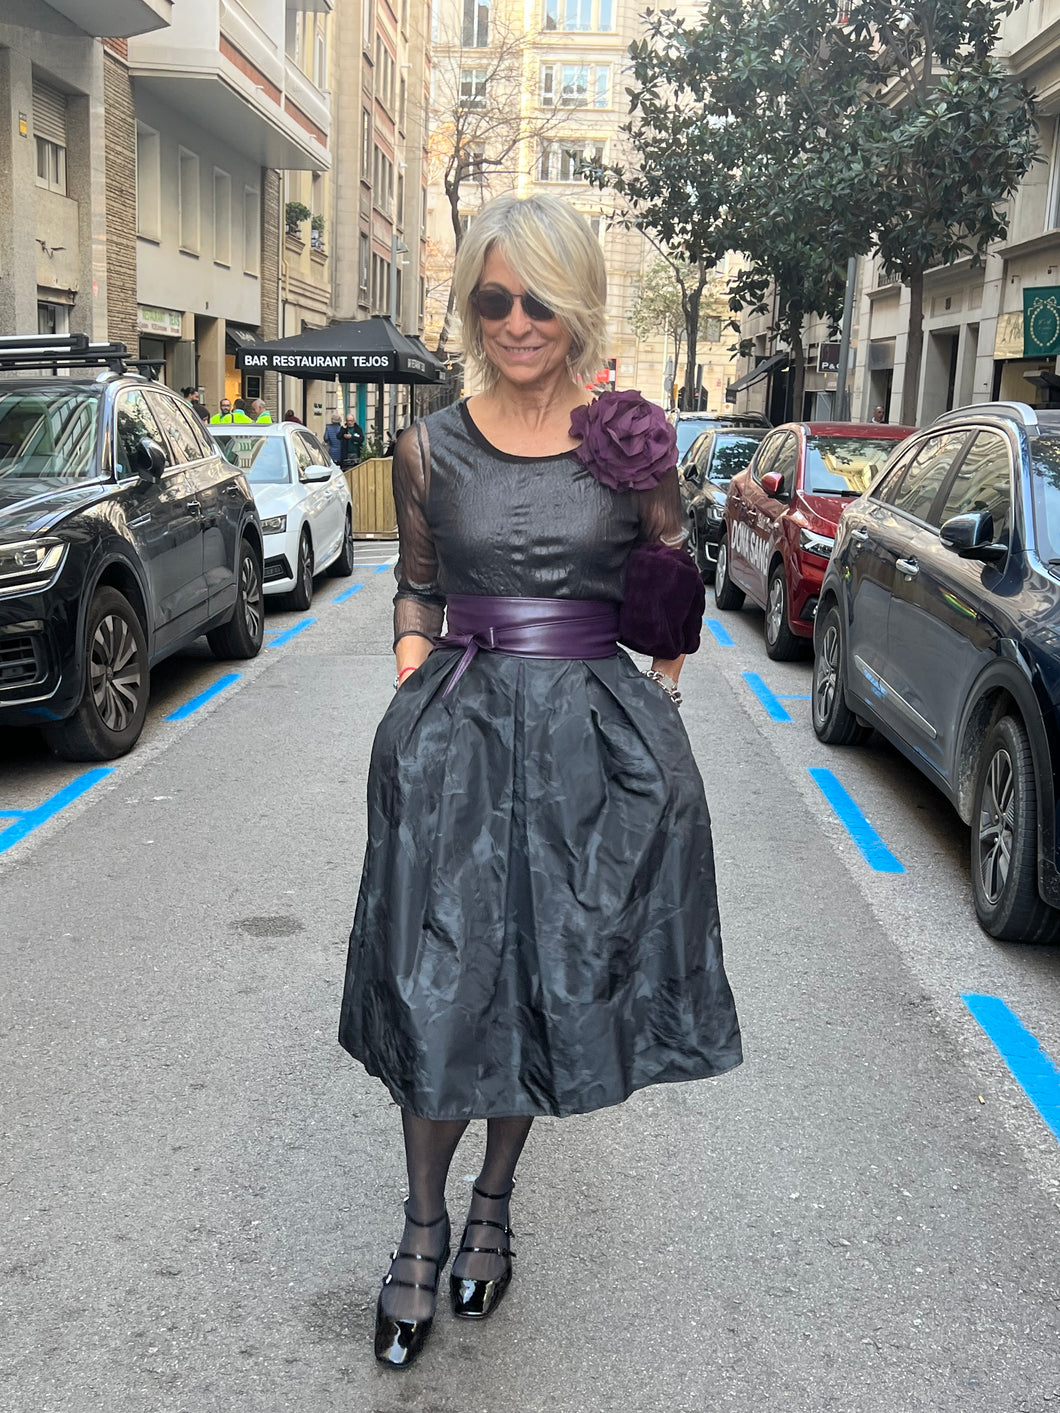 New collection Skirt Napoli